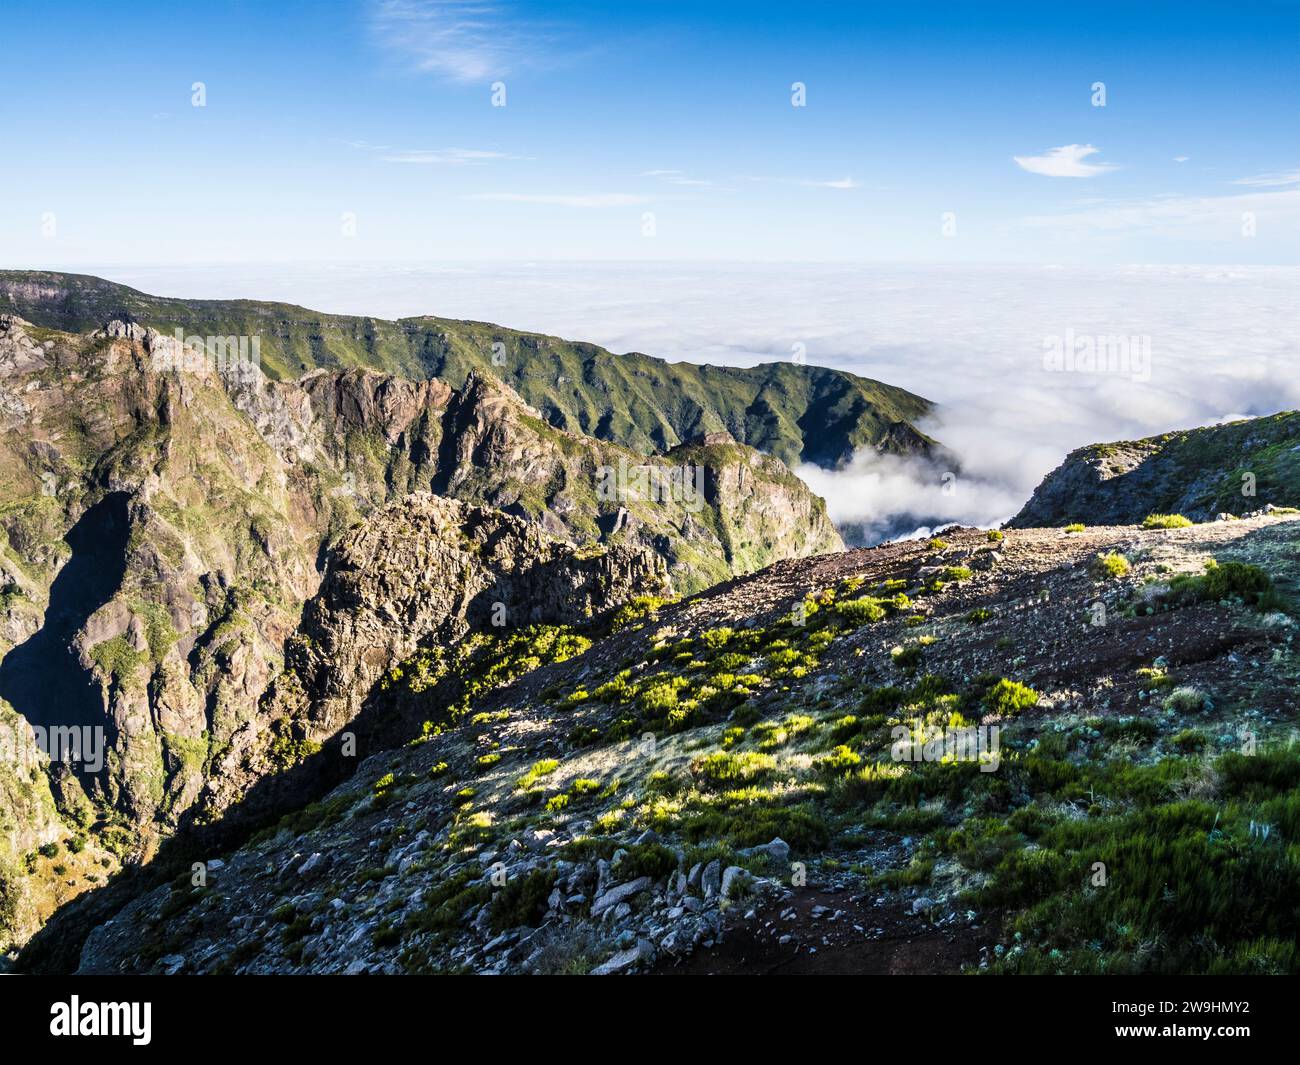 The mountains around the Pico do Arieiro on Madeira. Stock Photo